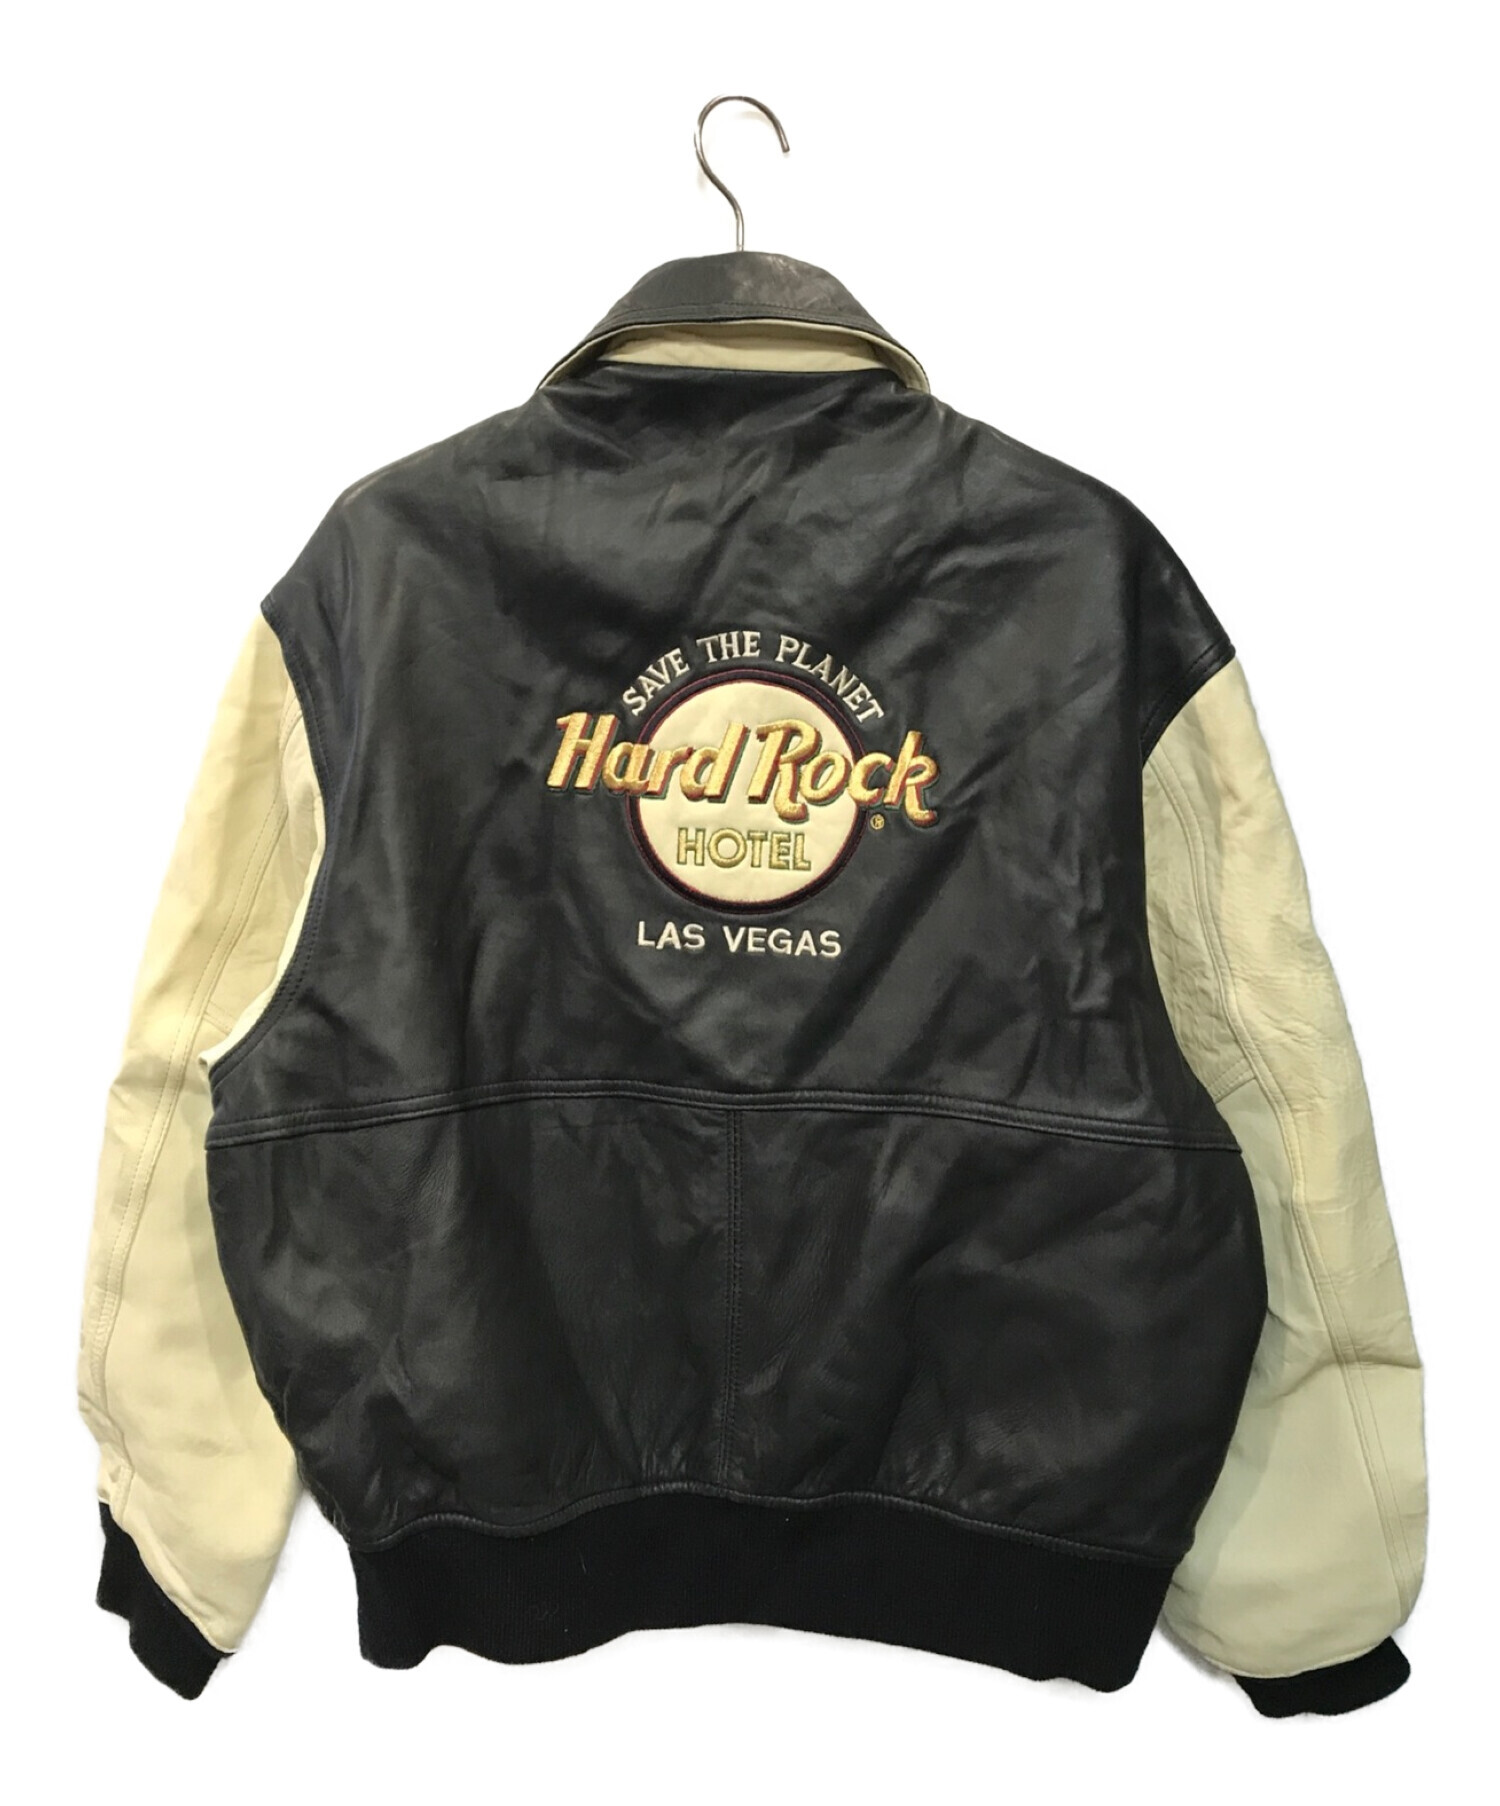 Hard Rock cafe (ハードロックカフェ) レザージャケット ブラック×ベージュ サイズ:L